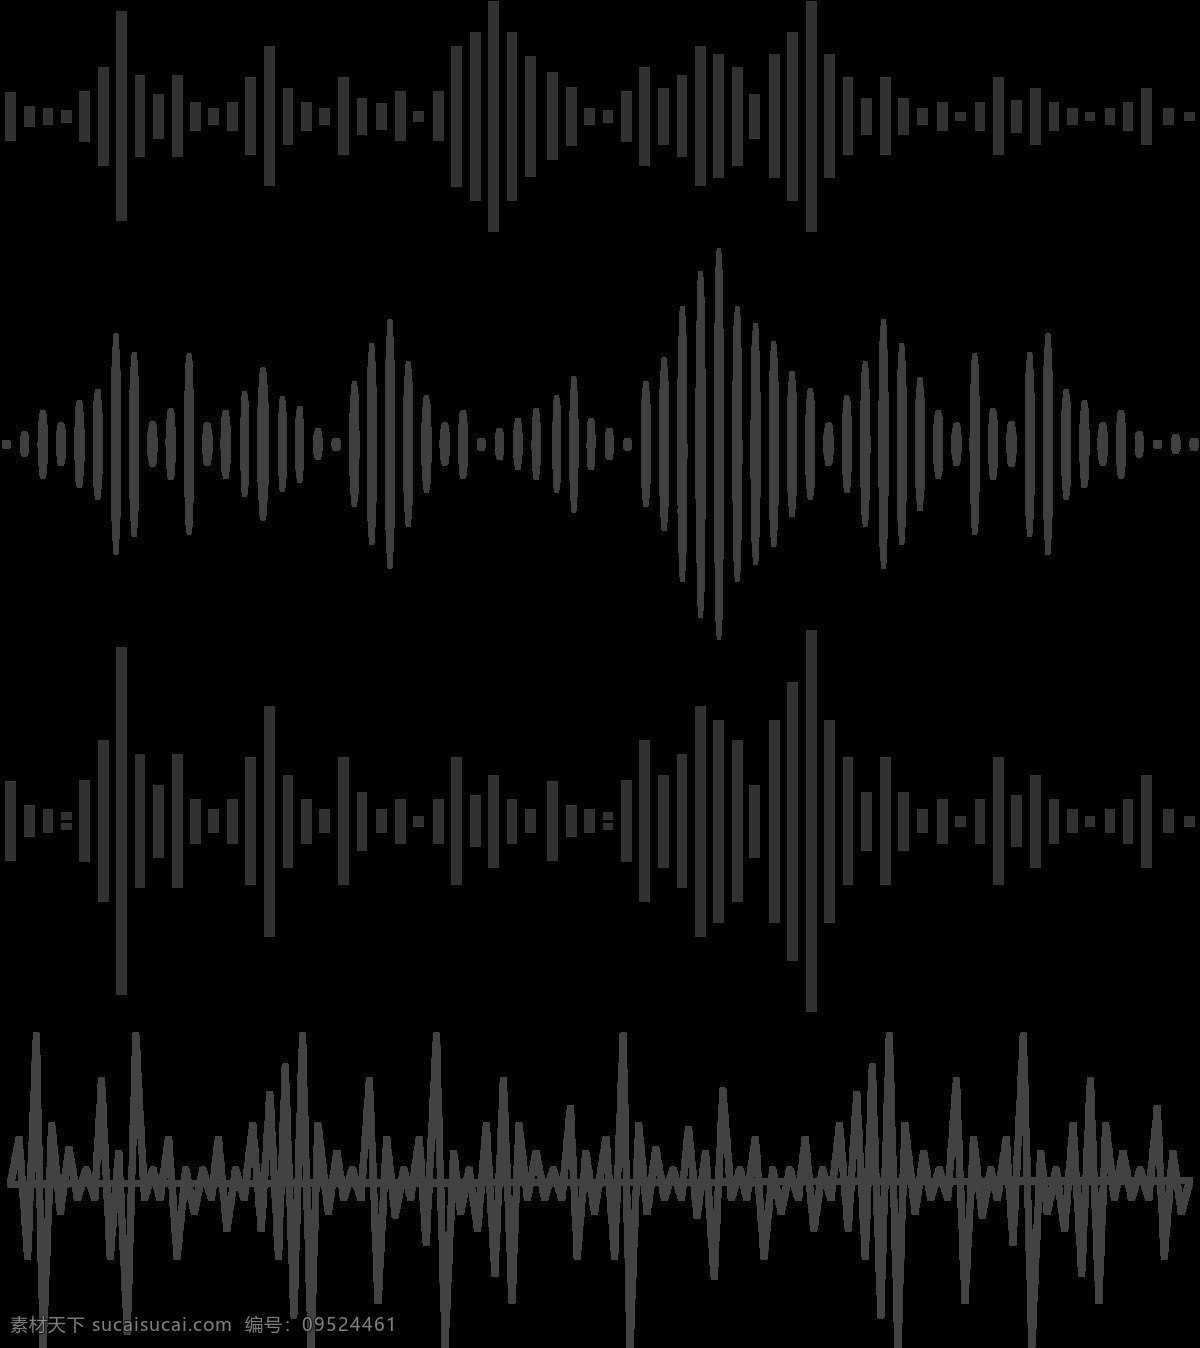 抽象 黑色 声波 图案 免 抠 透明 图 层 音乐声波 声音波 均衡器 曲线 音量 显示 背景 音乐素材 线条 声波图形 声音波形 声波素材 音波线条 素材声音 音乐符号